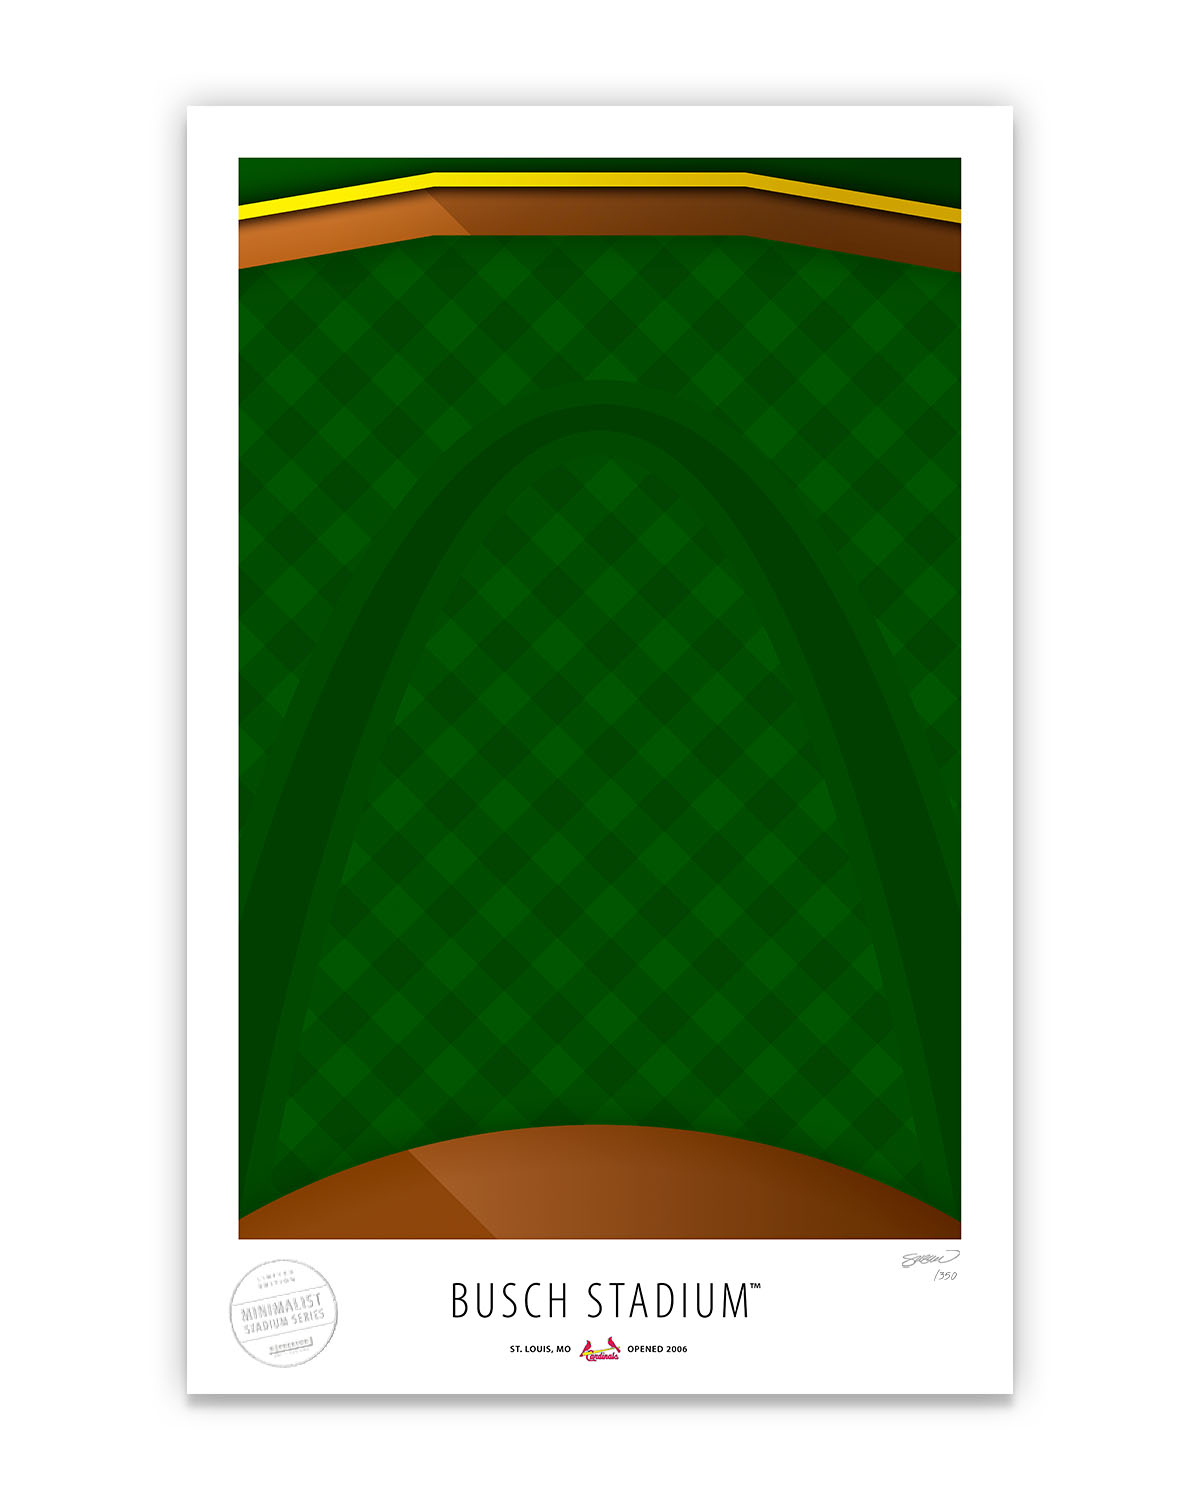 Busch Stadium gets new grass for 2022 season